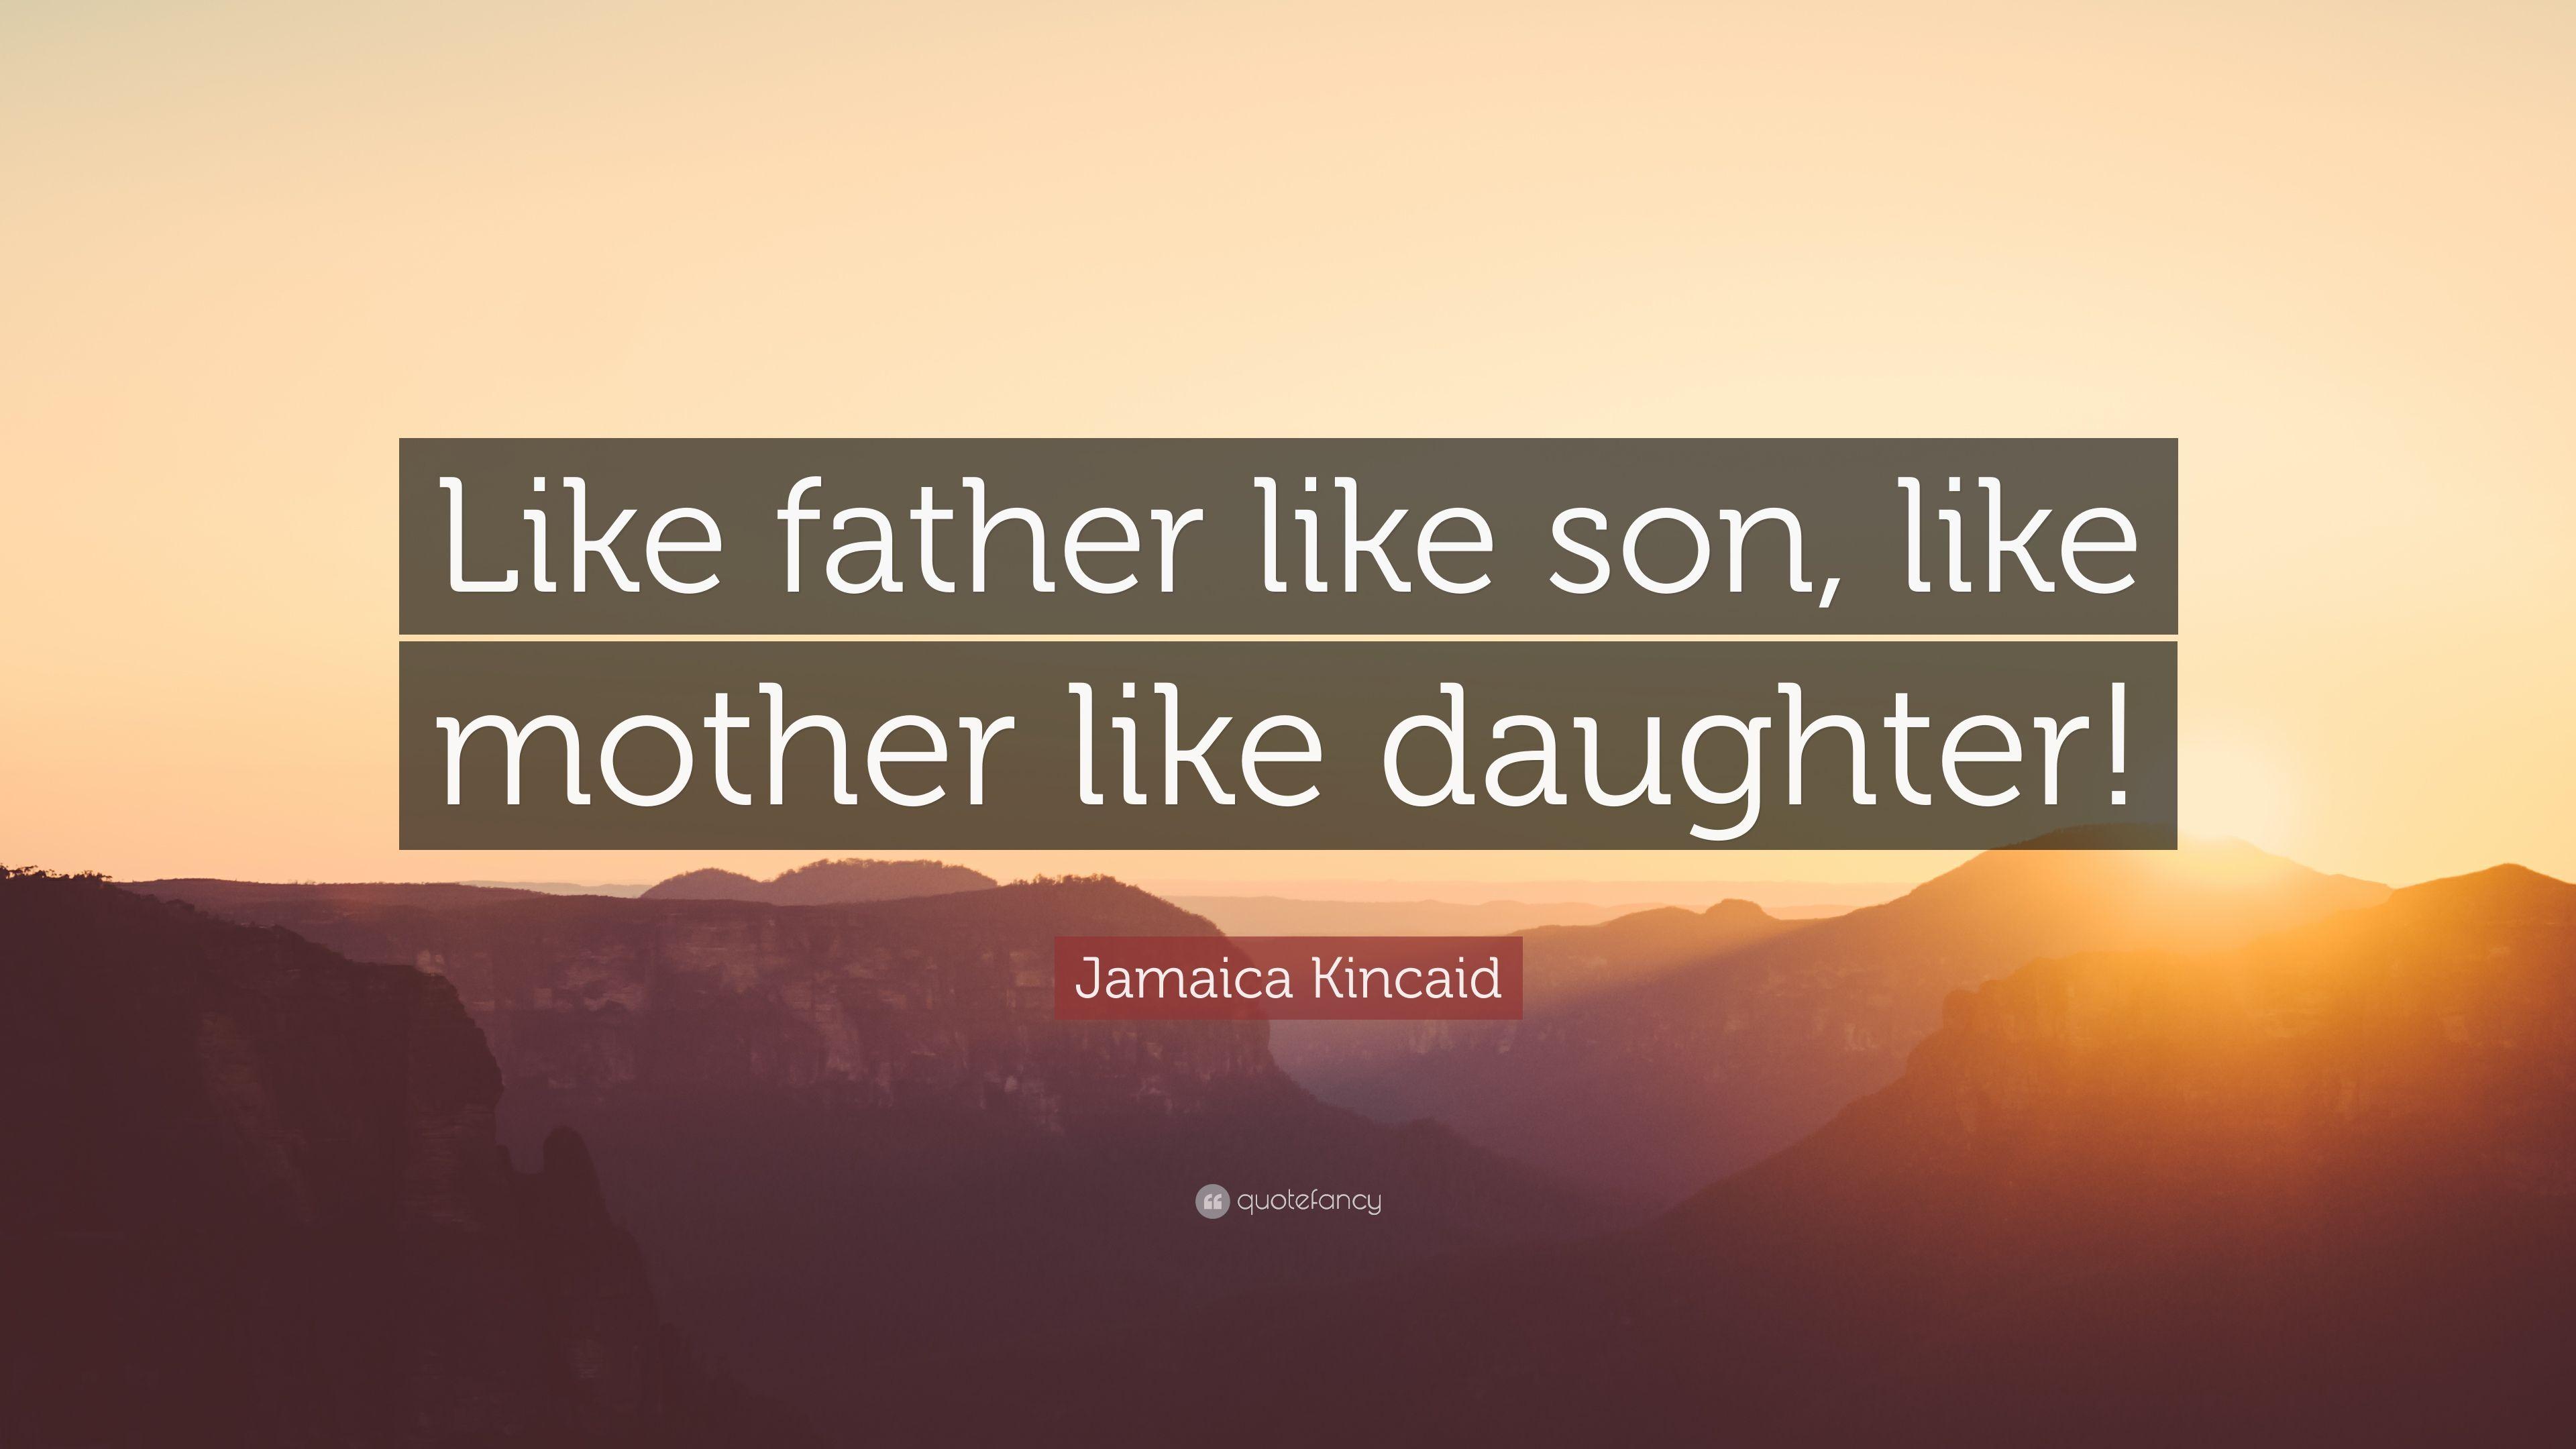 Jamaica Kincaid Quote: “Like father like son, like mother like